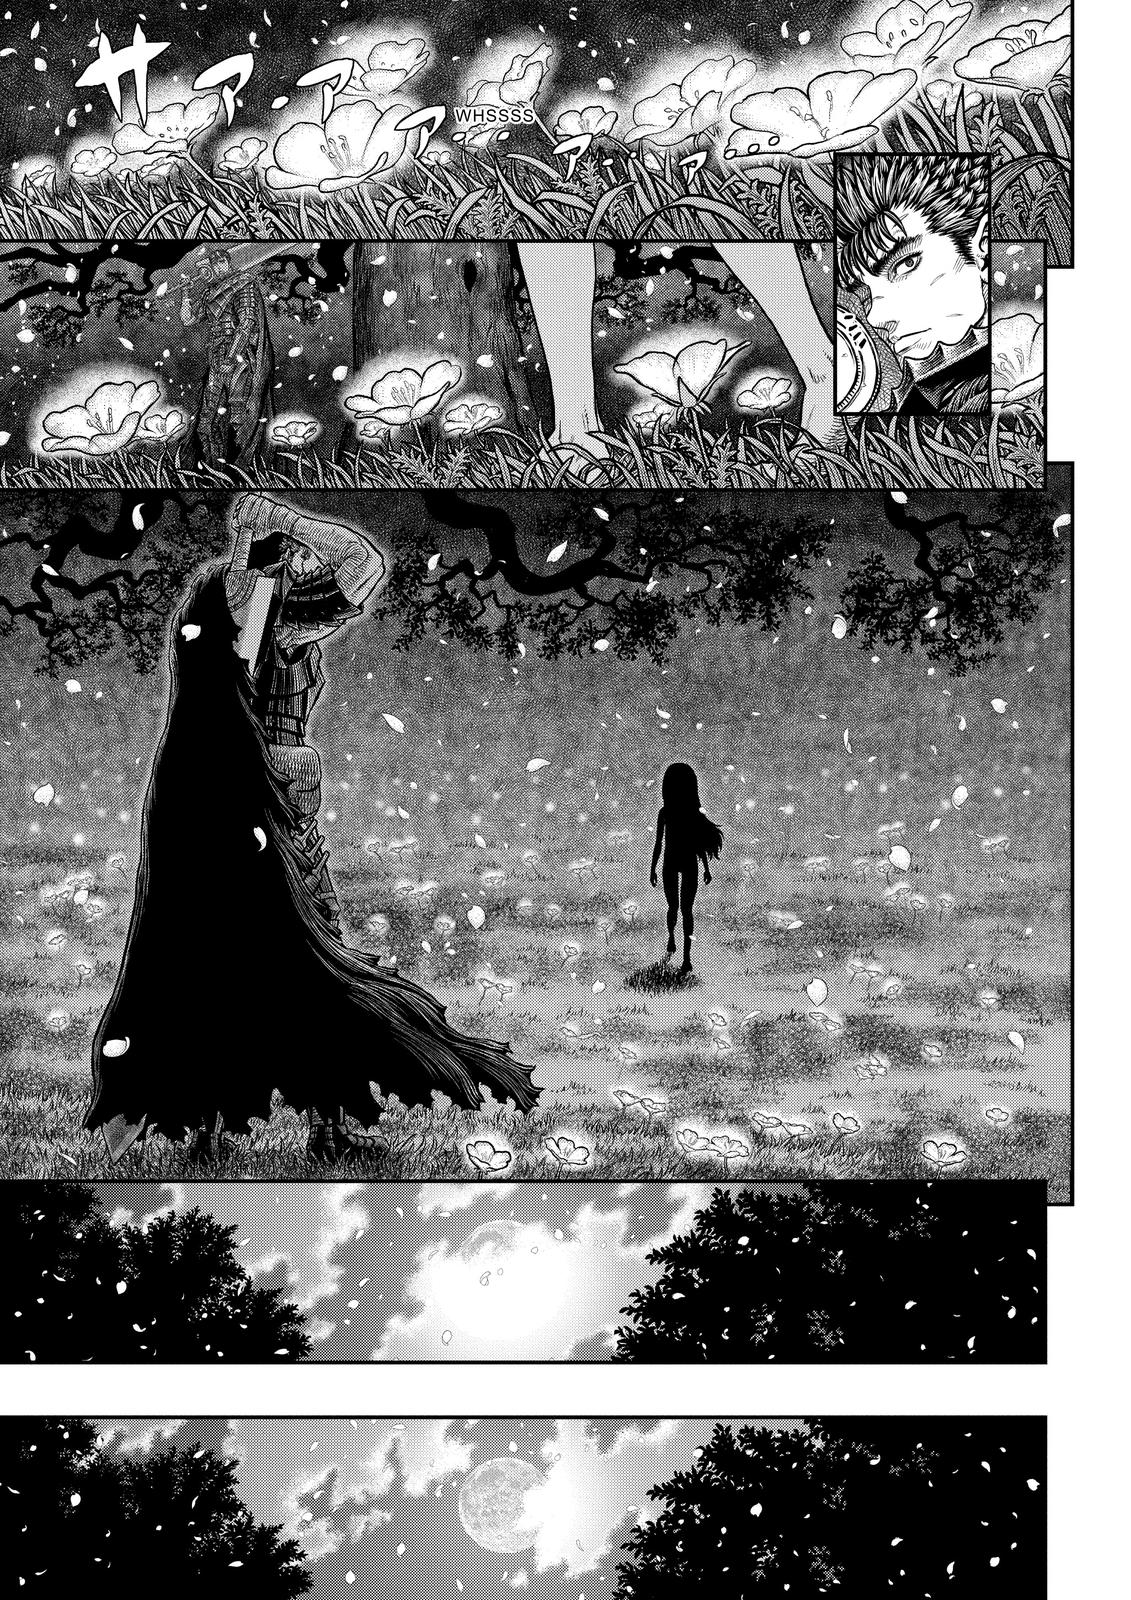 Berserk Manga Chapter 363 image 17